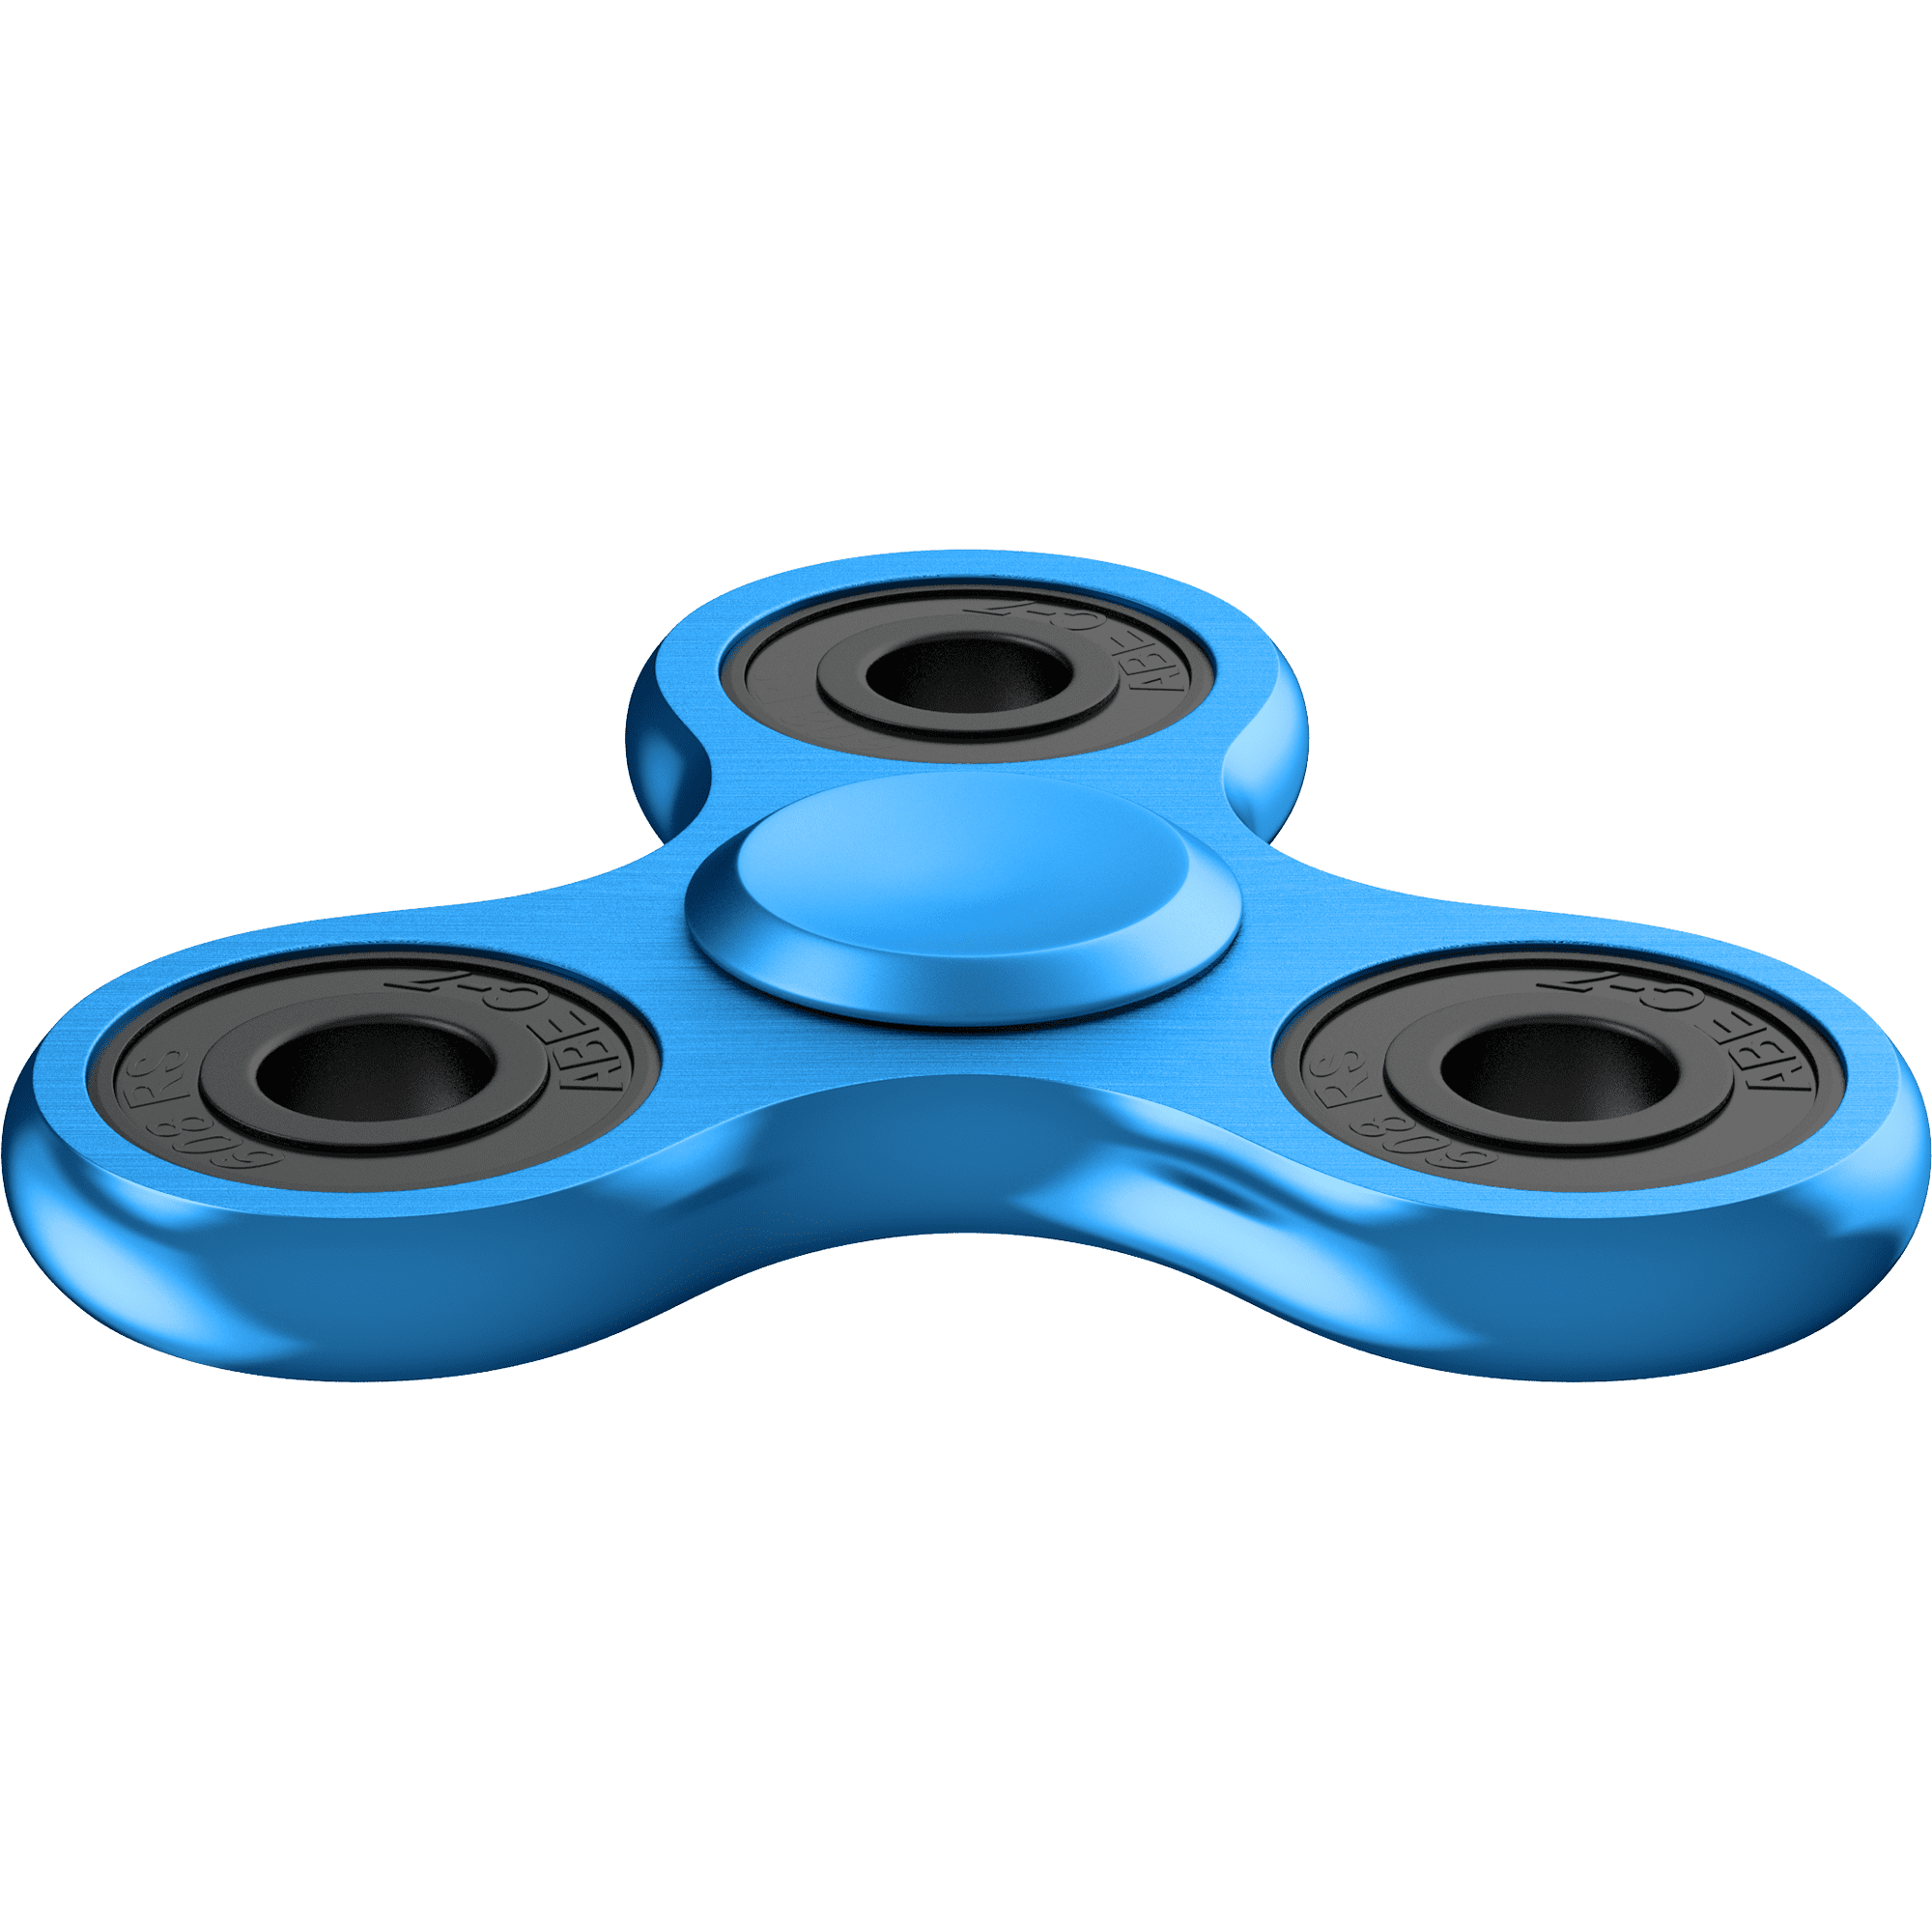 Zekpro Fidget Spinner - Hand Spinner Stress Relief Toy Aluminum Alloy Gadget